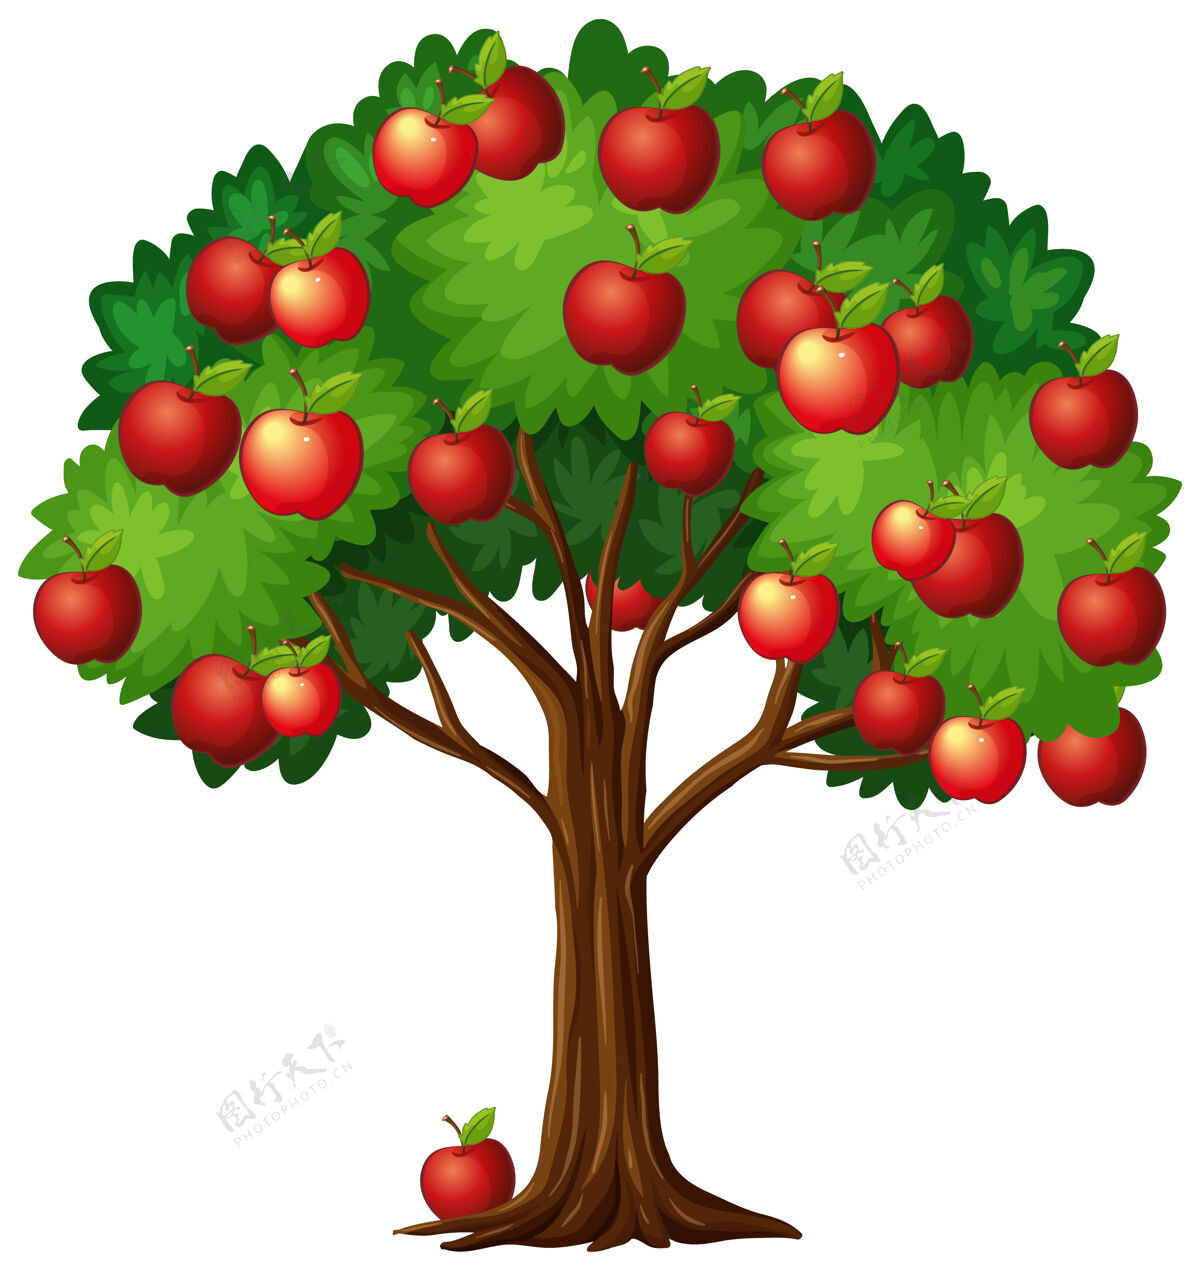 树叶树上有许多红苹果 背景是白色的树枝环境自然